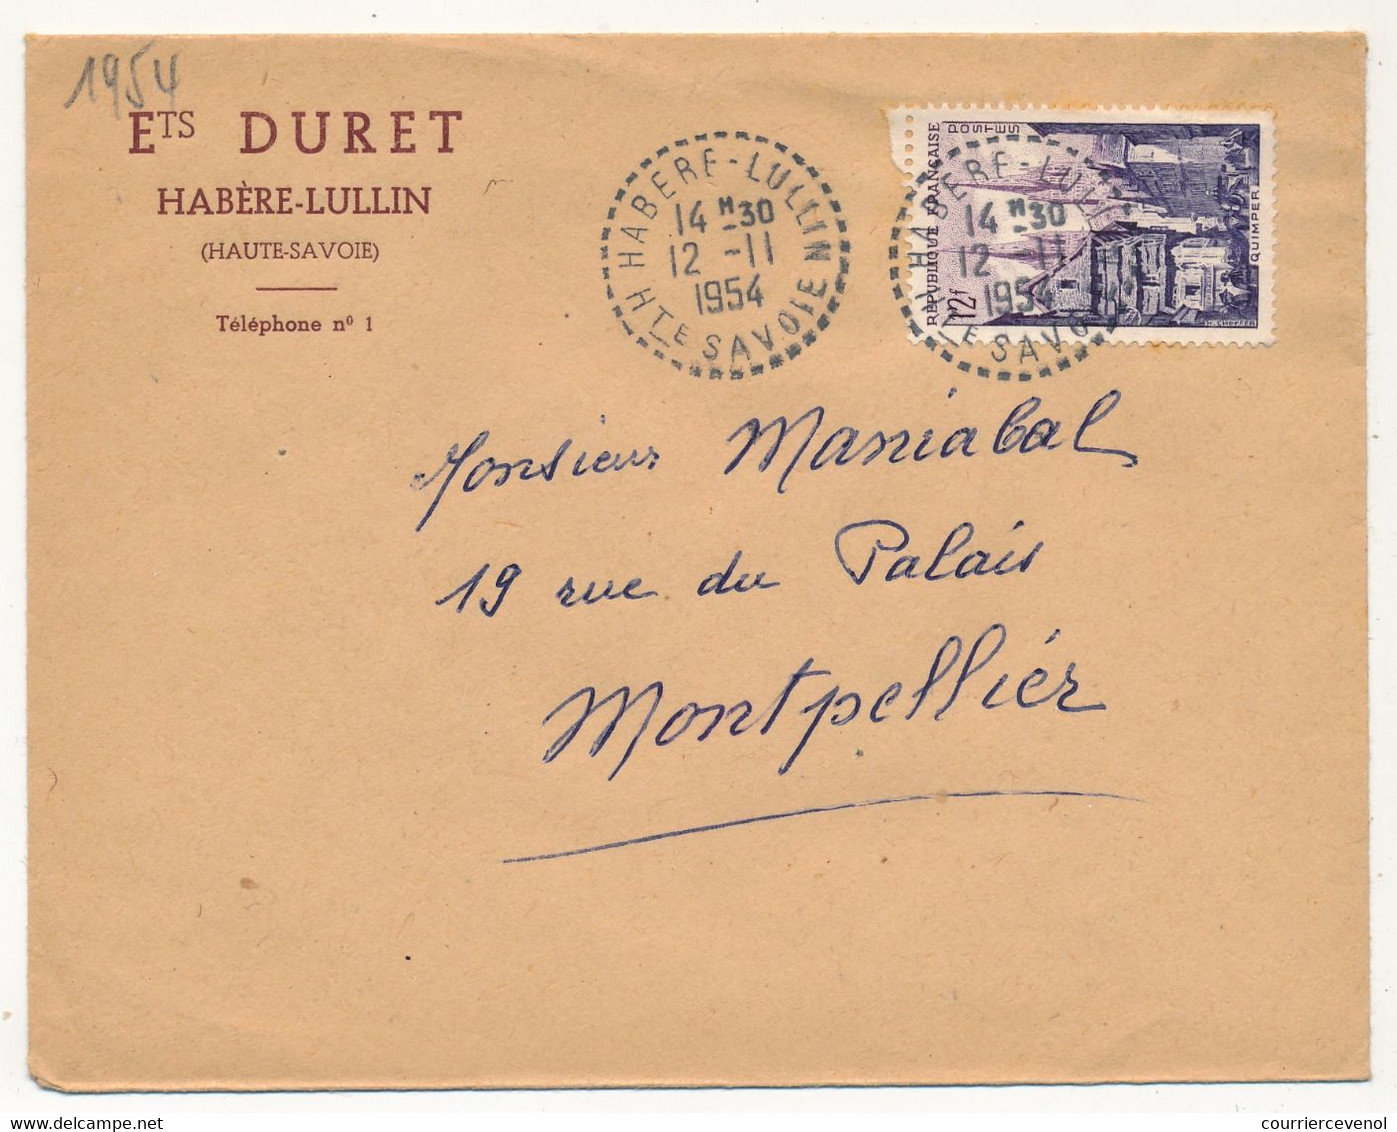 FRANCE - Env. En-tête "Ets DURET HABÈRE-LULLIN (Hte Savoie)" - Cachet Tireté Idem - 1954 - S/12F Quimper - Manual Postmarks